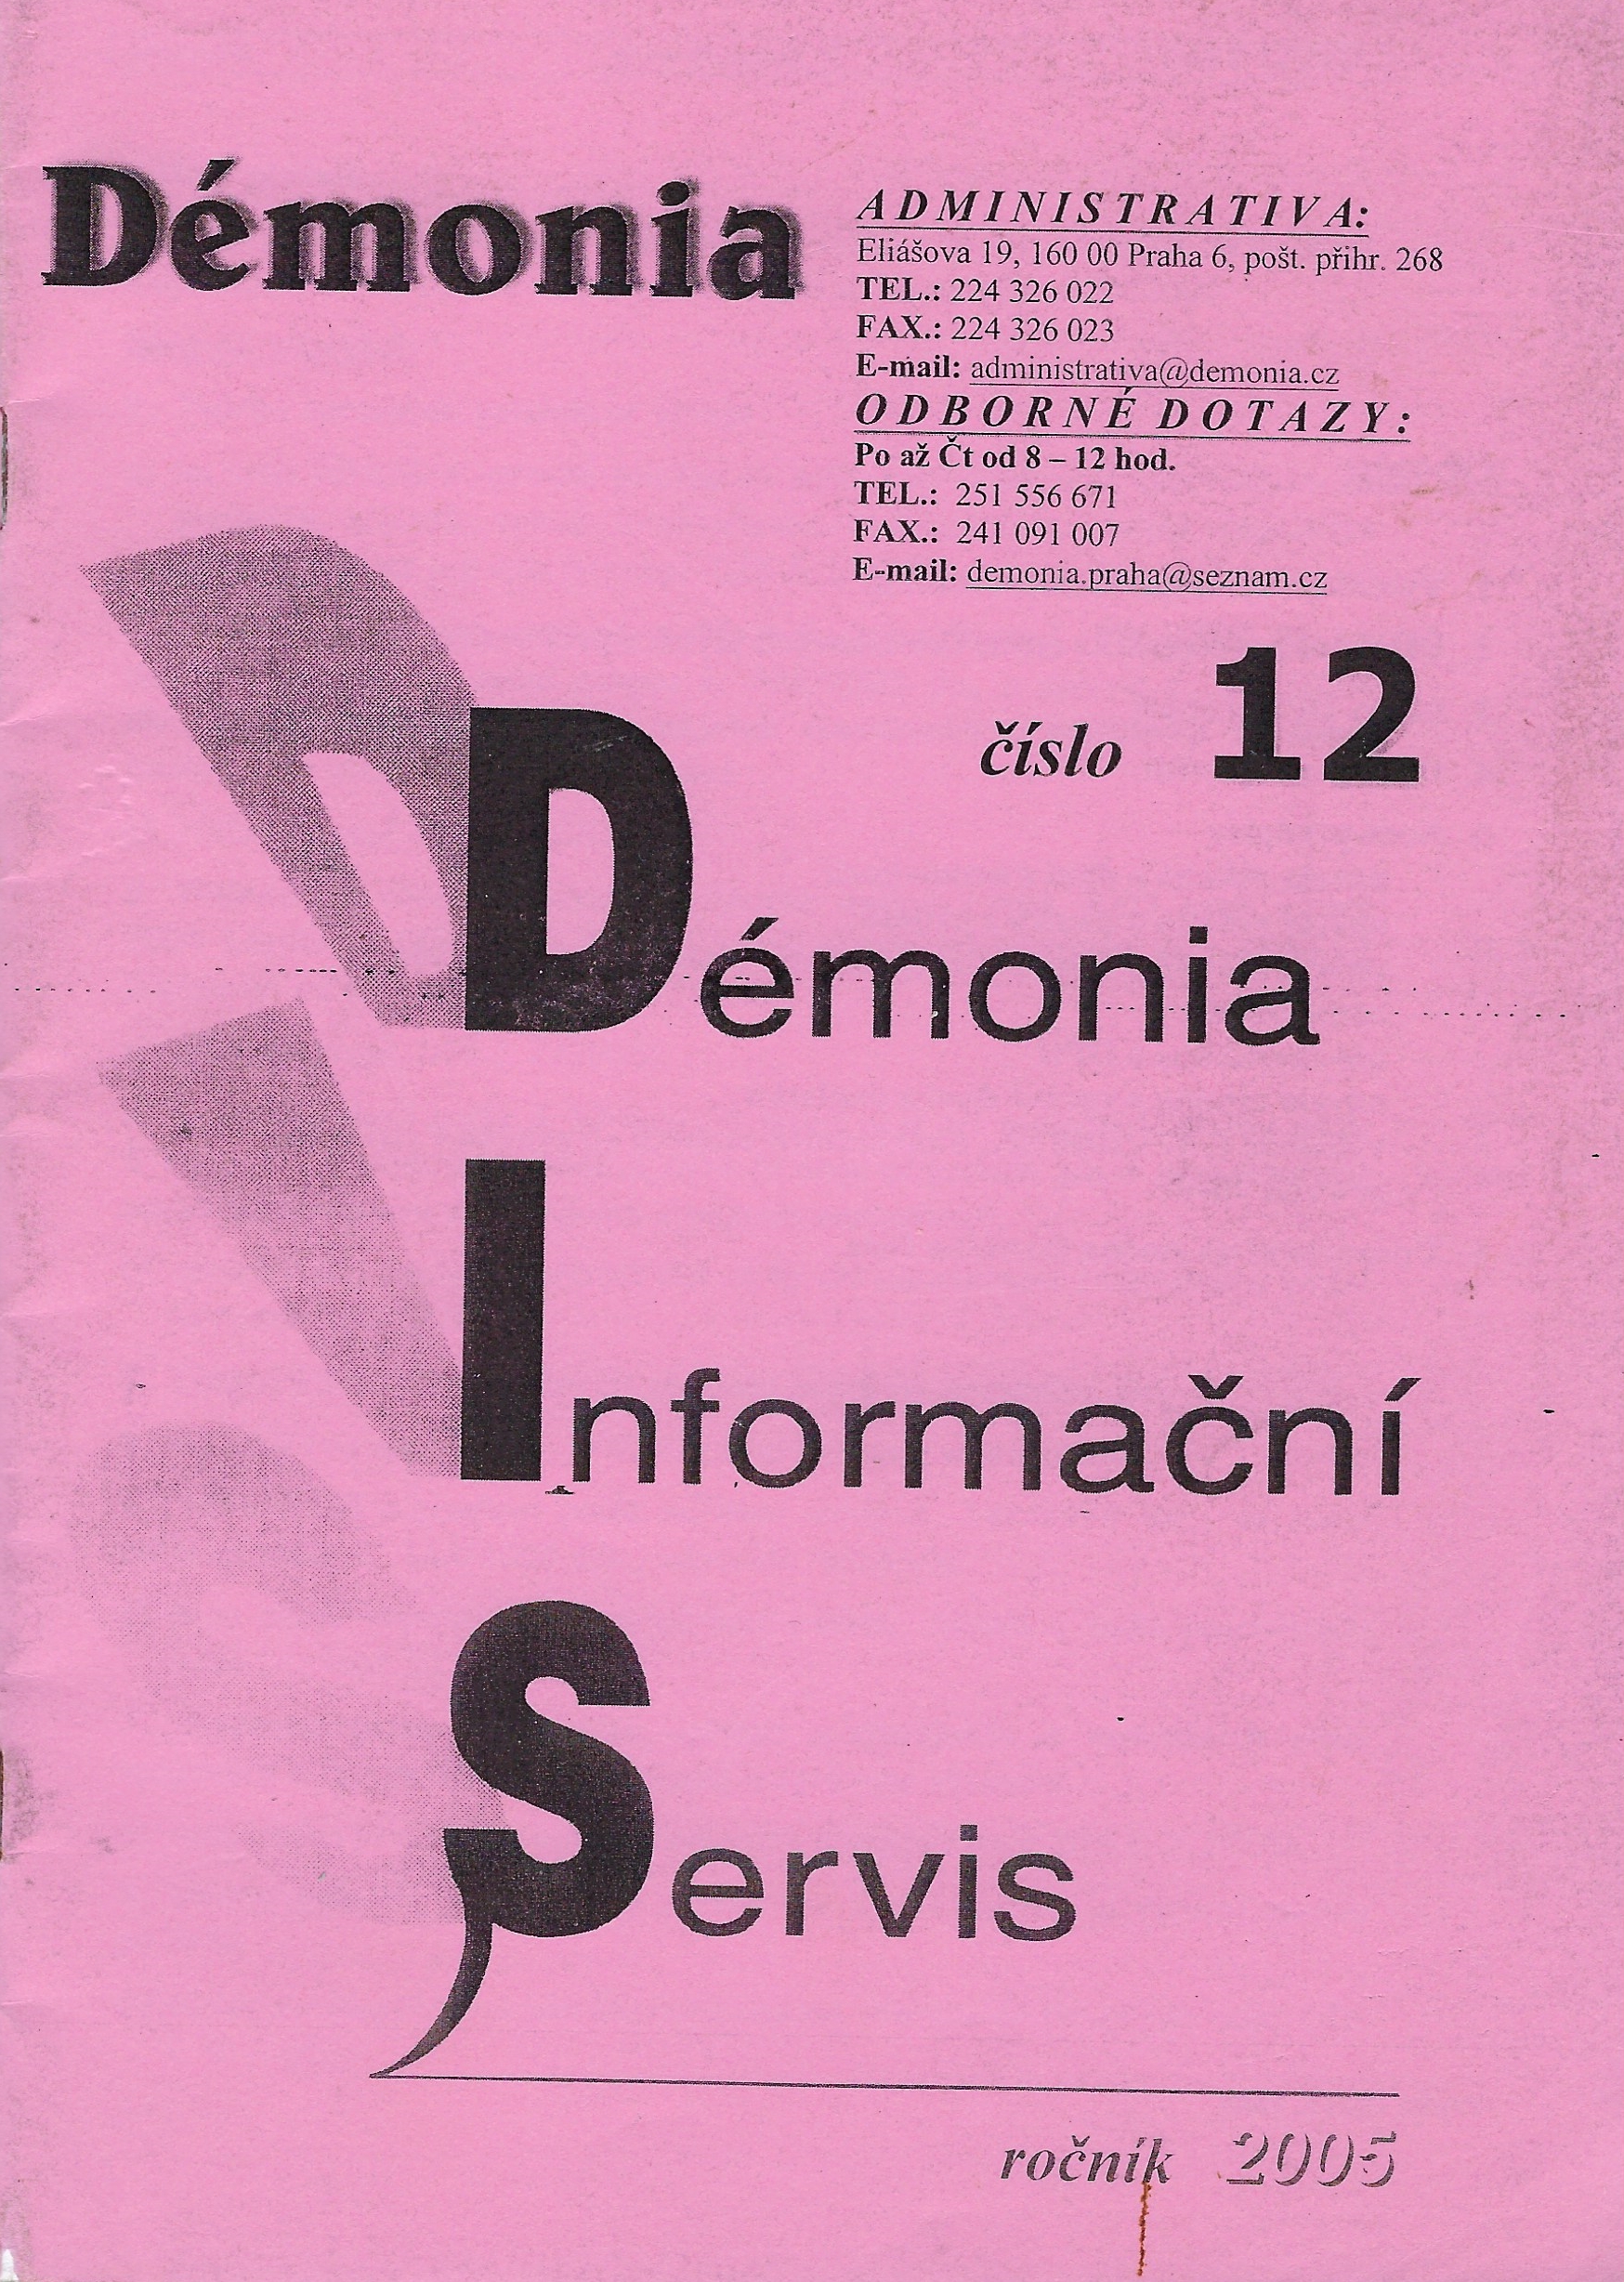 Démonia 12/2005